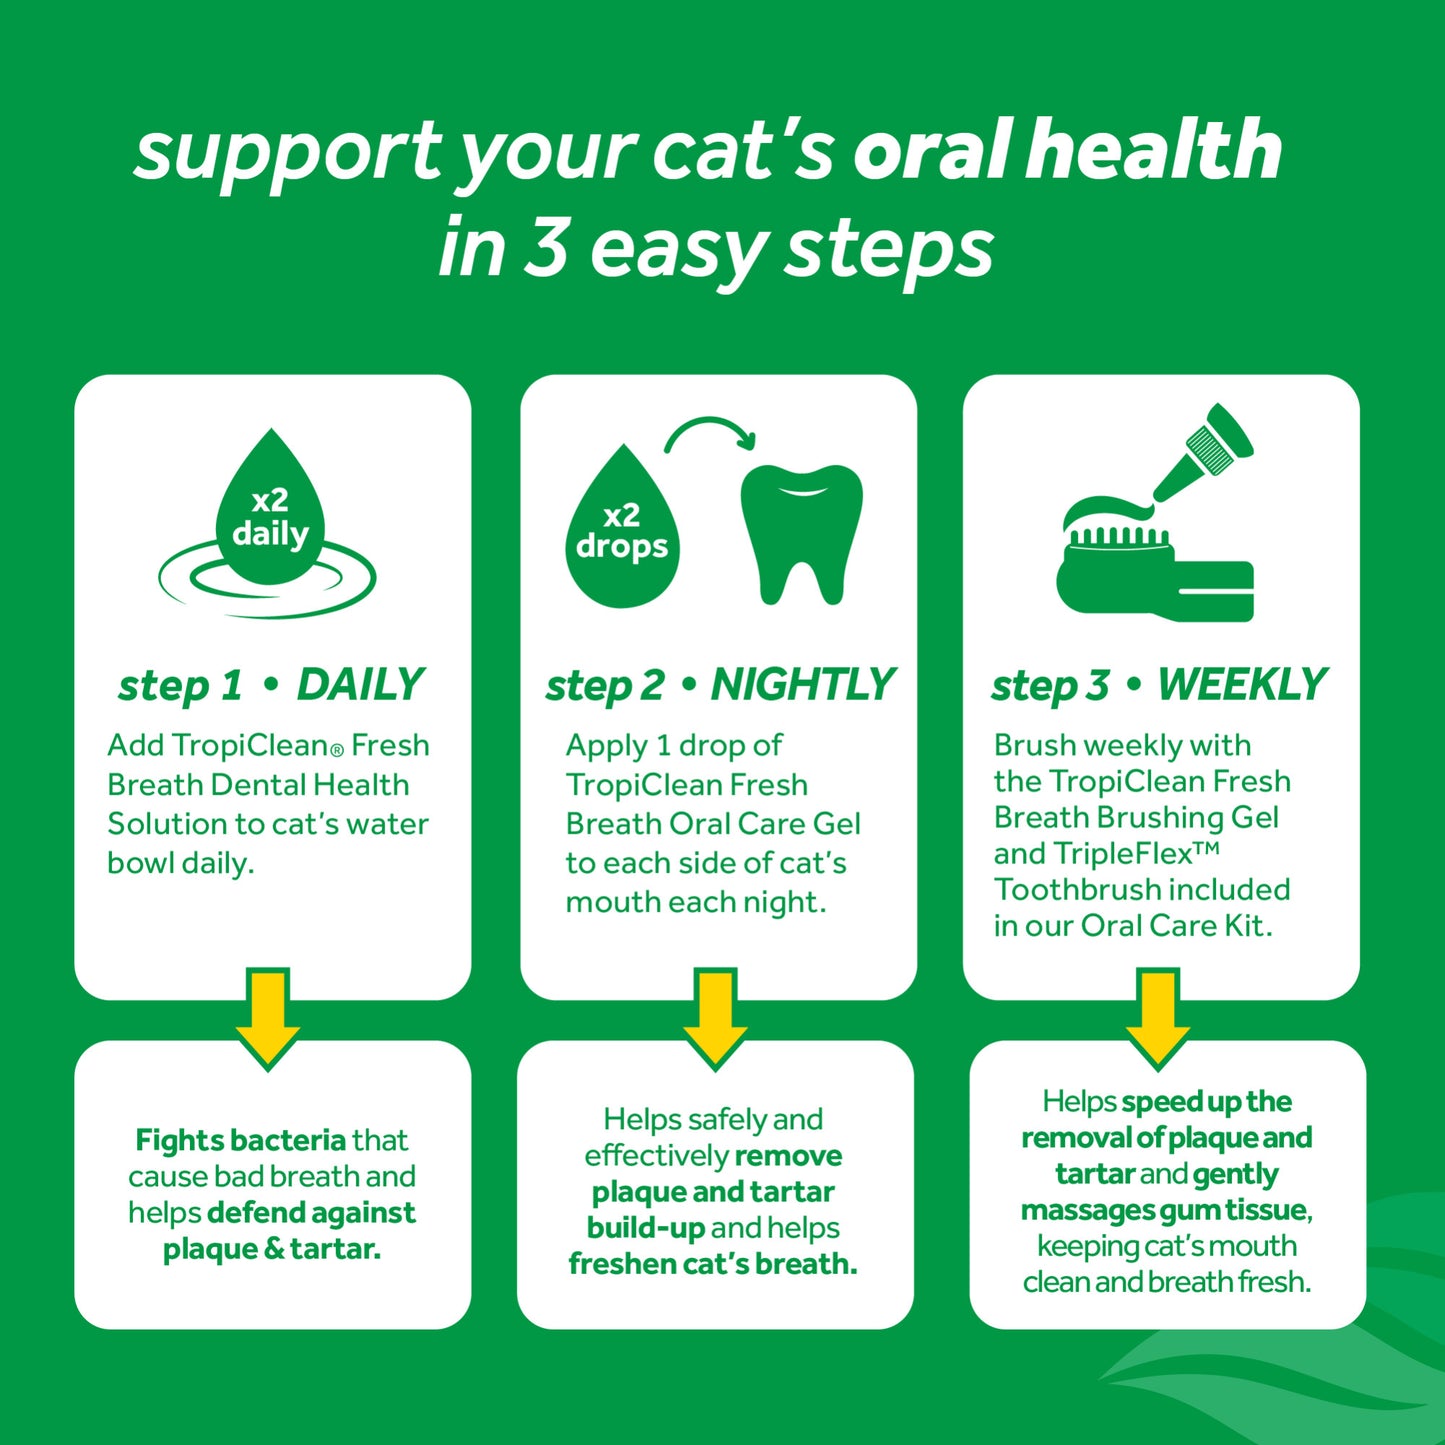 TropiClean Fresh Breath Oral Care Clean Teeth Gel for Cats, 2oz